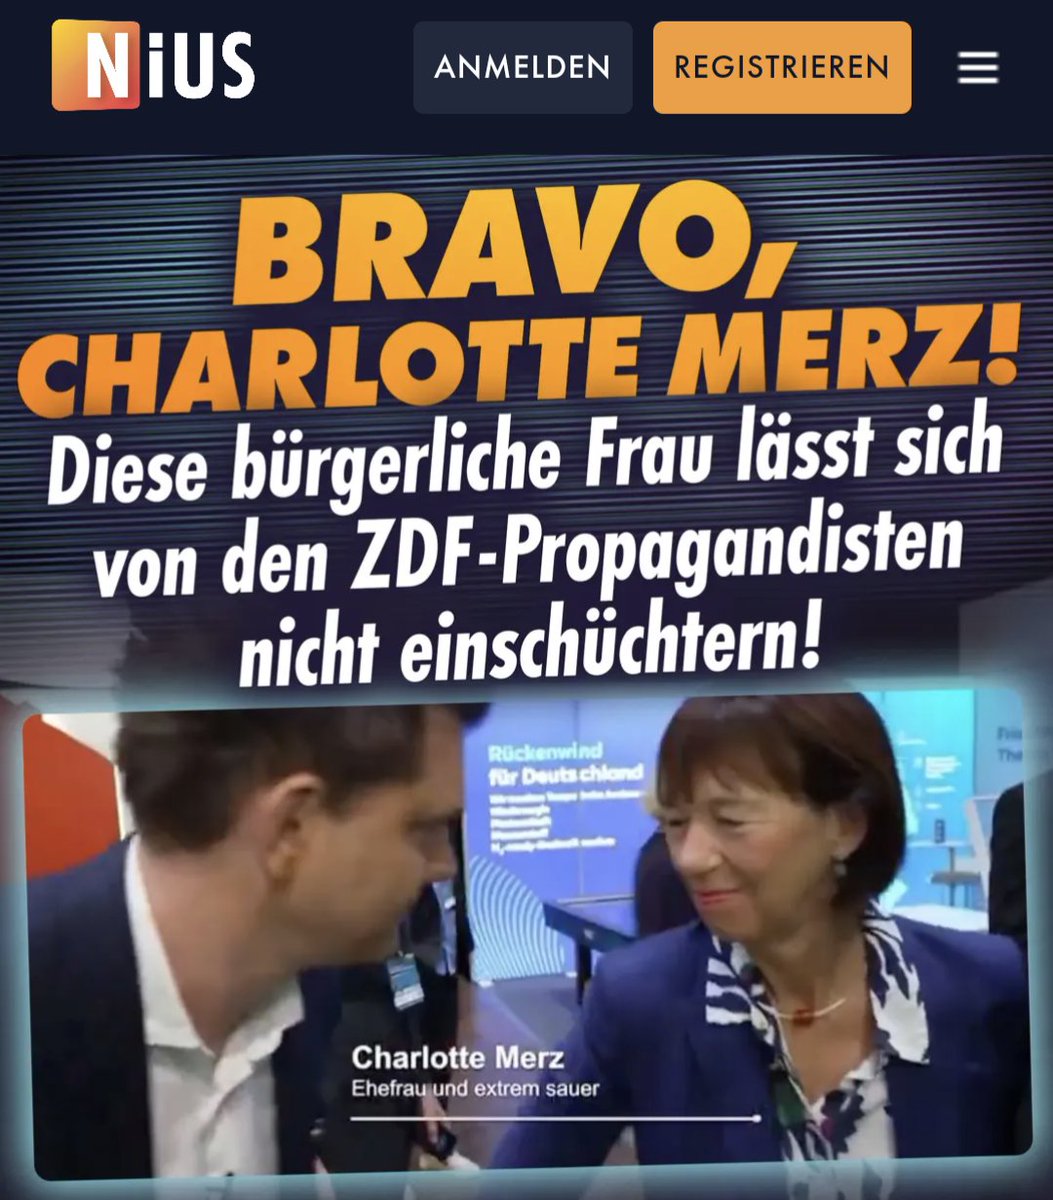 Die vollkommen absurde Aufregung um Charlotte Merz, die einem ZDF-Propagandisten das Mikro runter gedrückt hat, beweist, wie sehr das Land in eine sorgsam gestellte Falle der Linken tappt: Seit Jahren laufen unter dem Label 'Satire' absolut unjournalistische Propaganda-Sendungen,